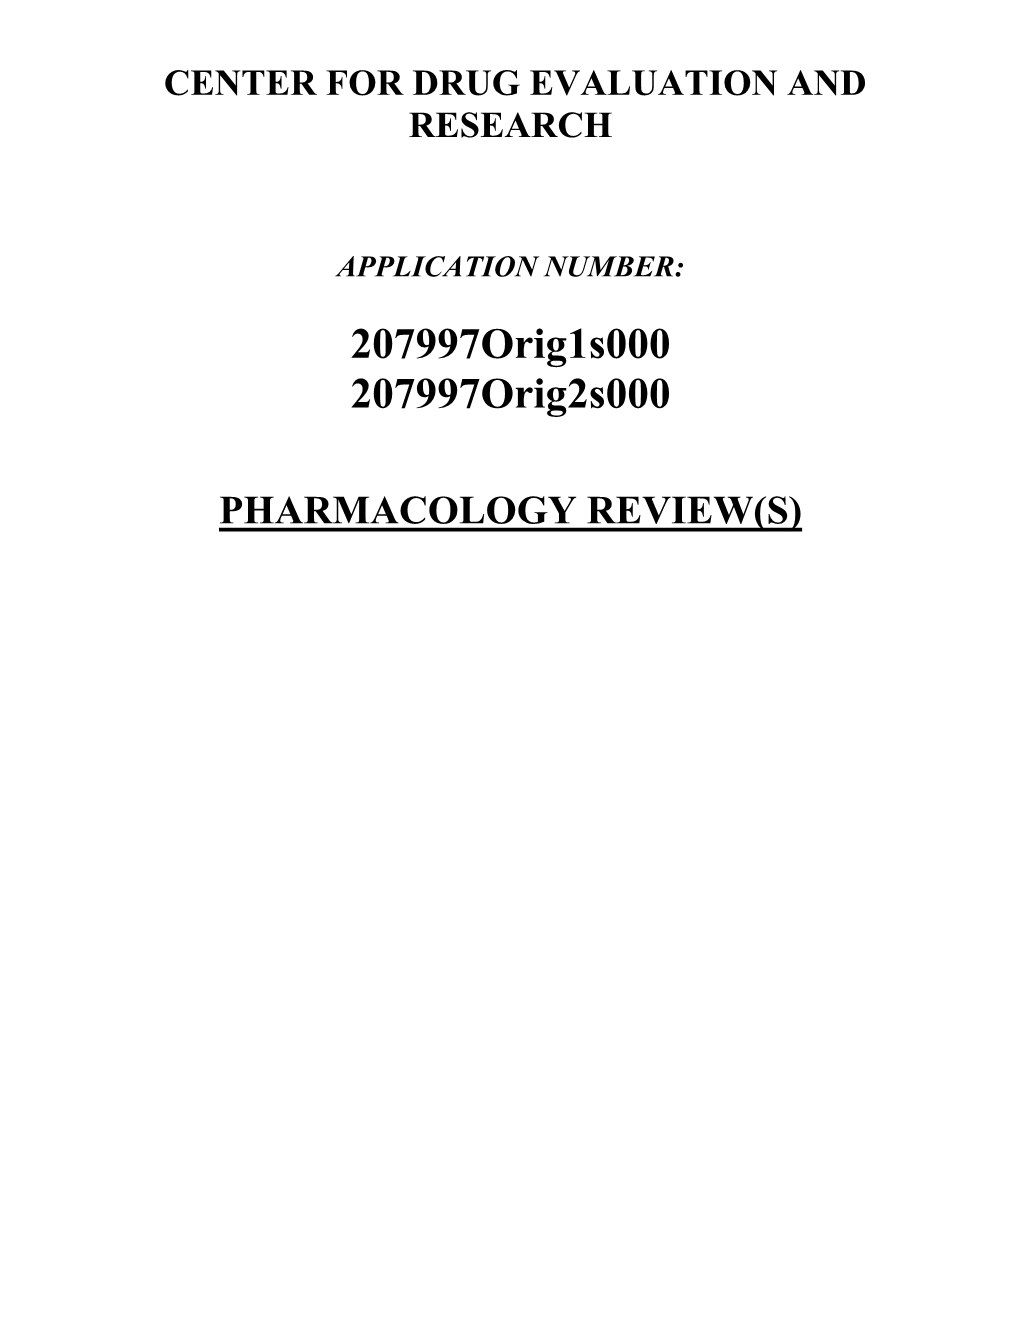 Pharmacology Review(S) Memorandum